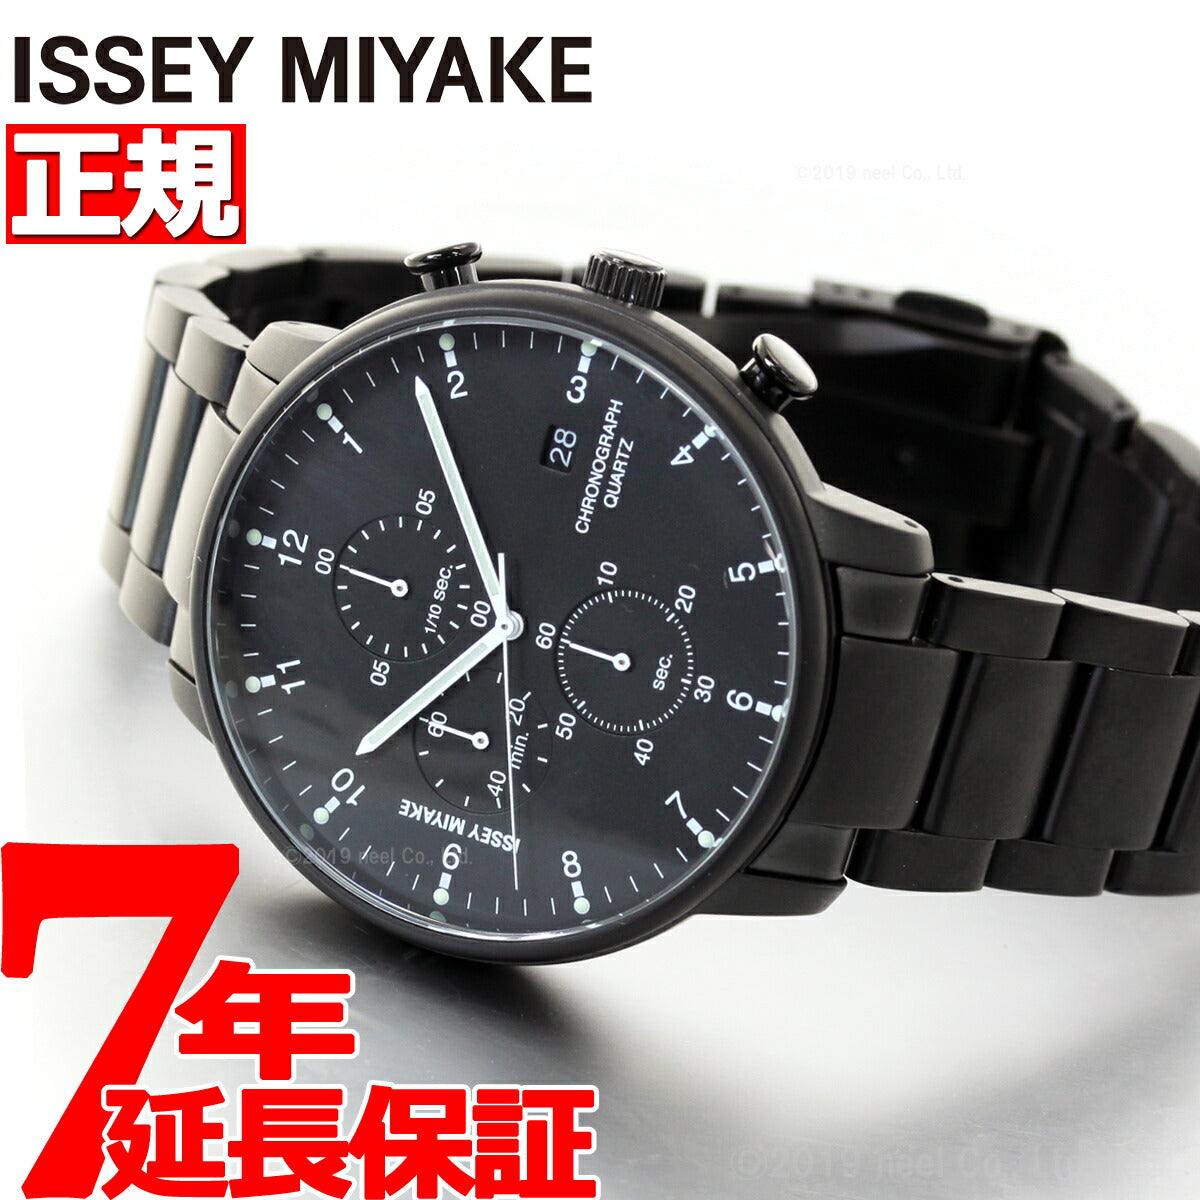 イッセイミヤケ ISSEY MIYAKE 腕時計 時計 メンズ C シー ICHIRO IWASAKI 岩崎一郎デザイン クロノグラフ NYAD008